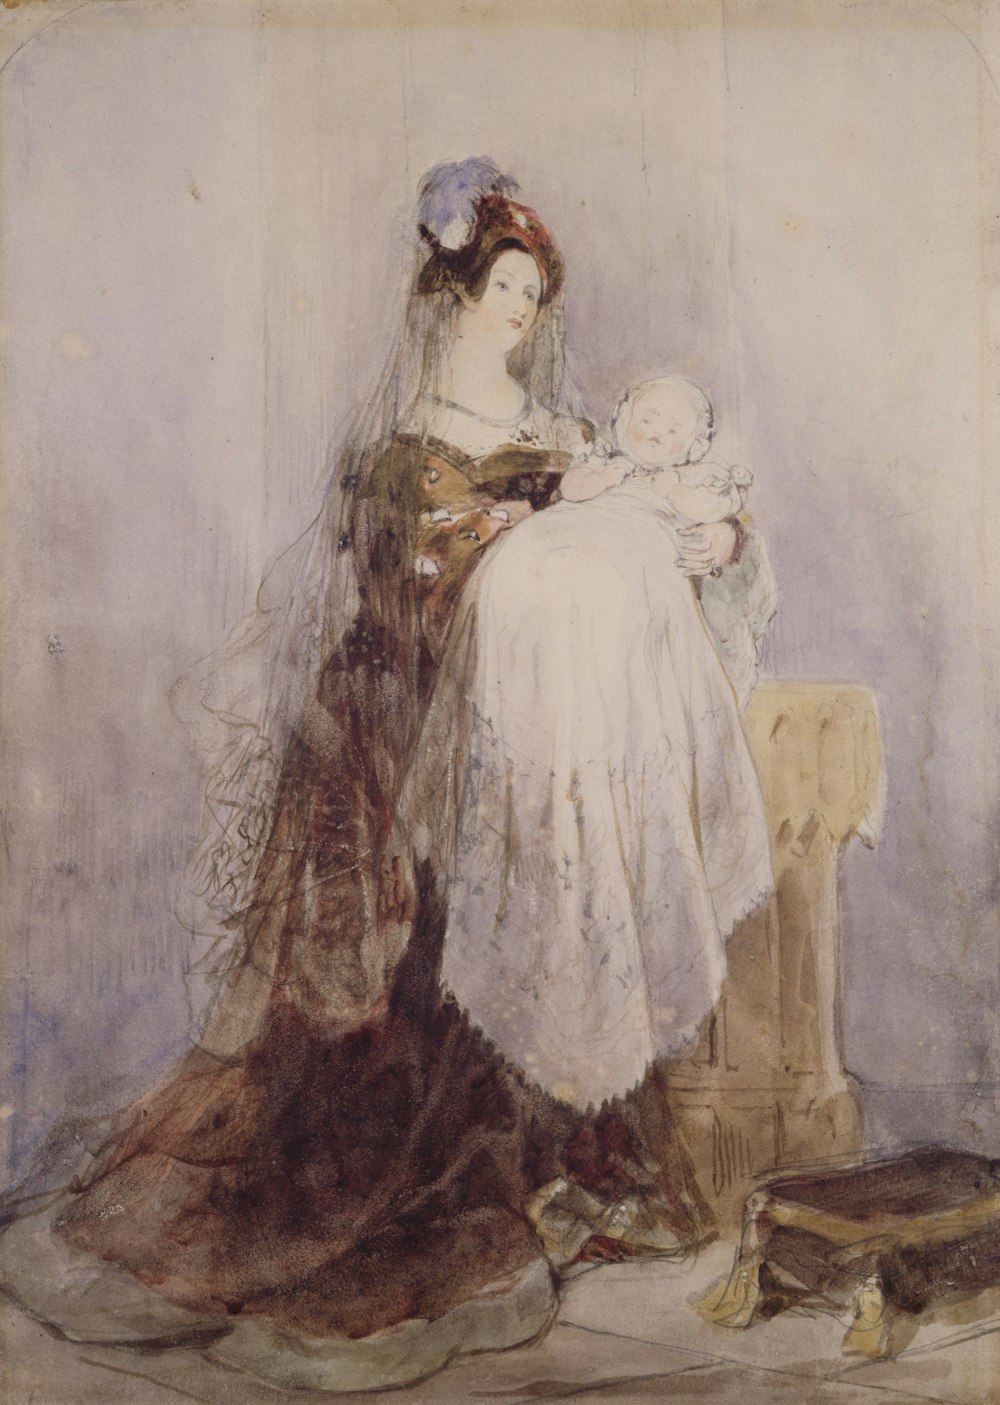 Gemälde einer Frau, die Baby trägt